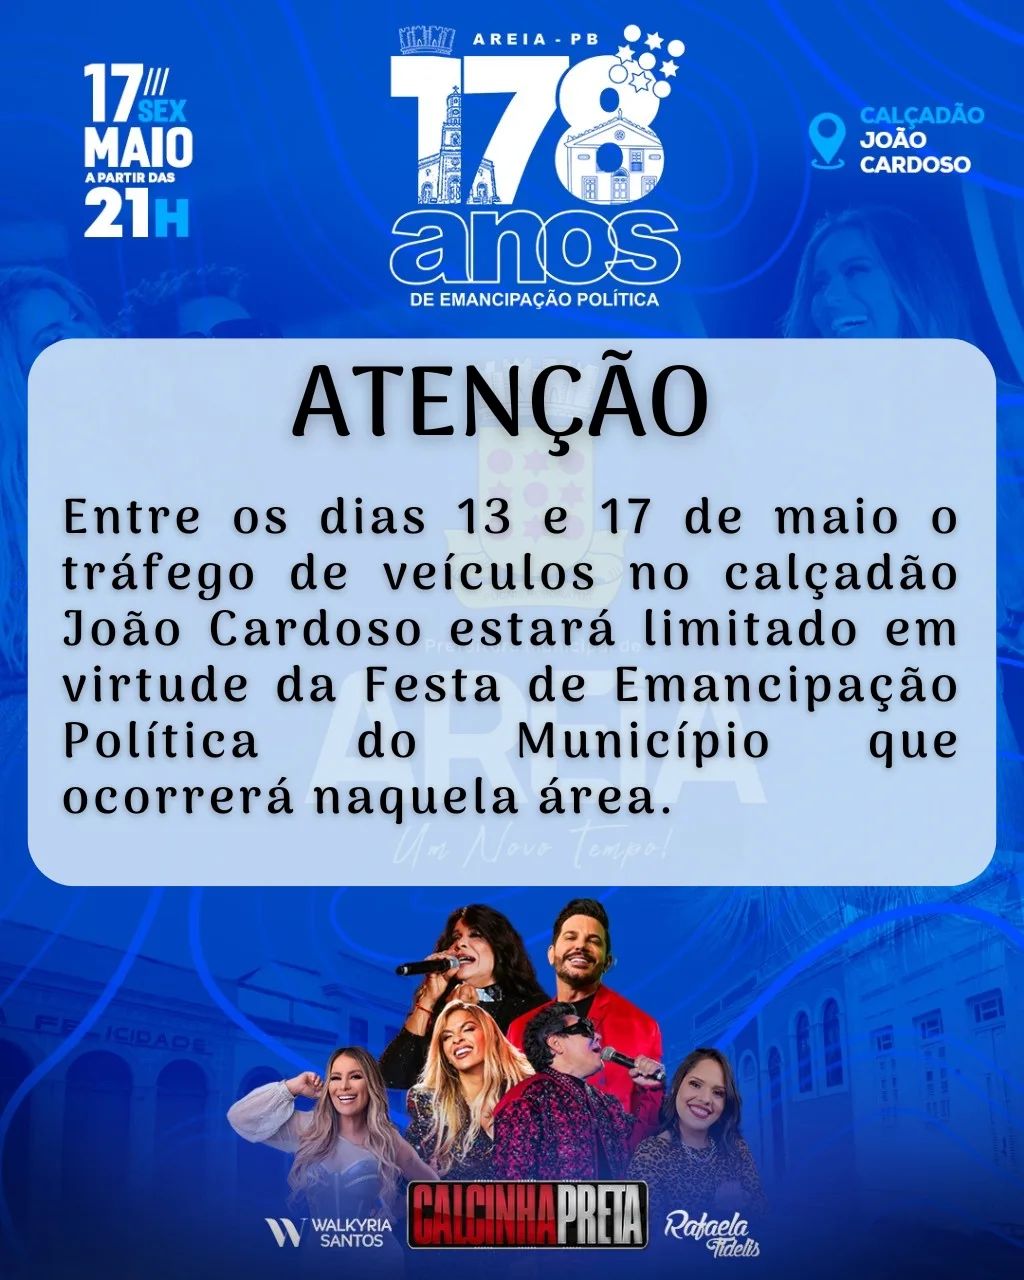 Entre 13 a 17 de maio devido a Festa dos 178 anos de Areia o transito de veículos no calçadão João Cardoso será limitado